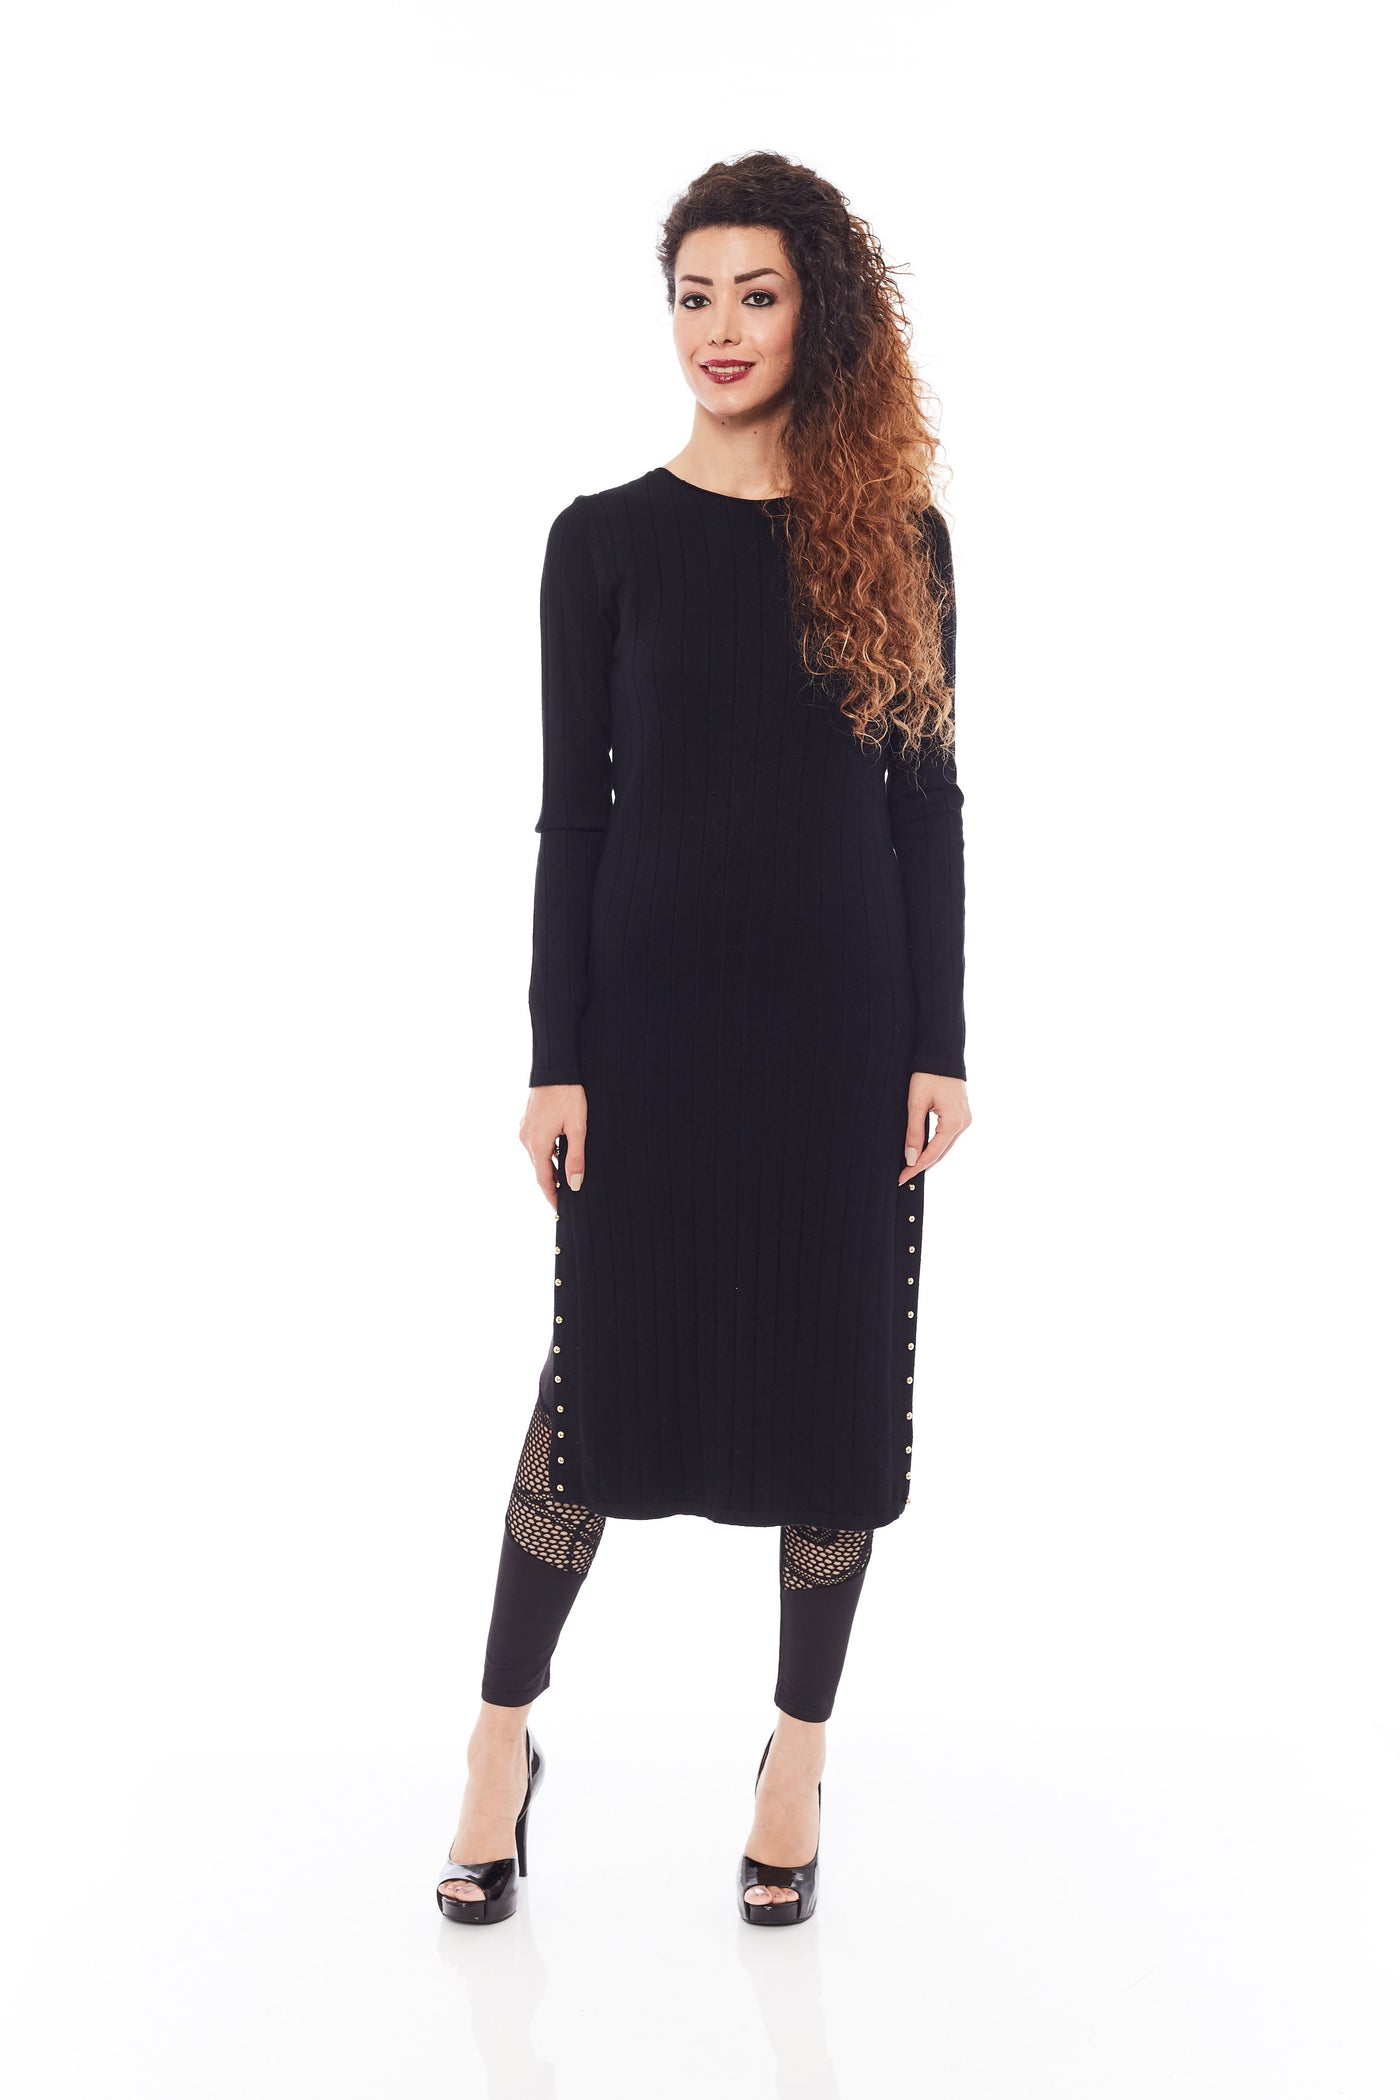 Buy Long Black Midi Dresses Online